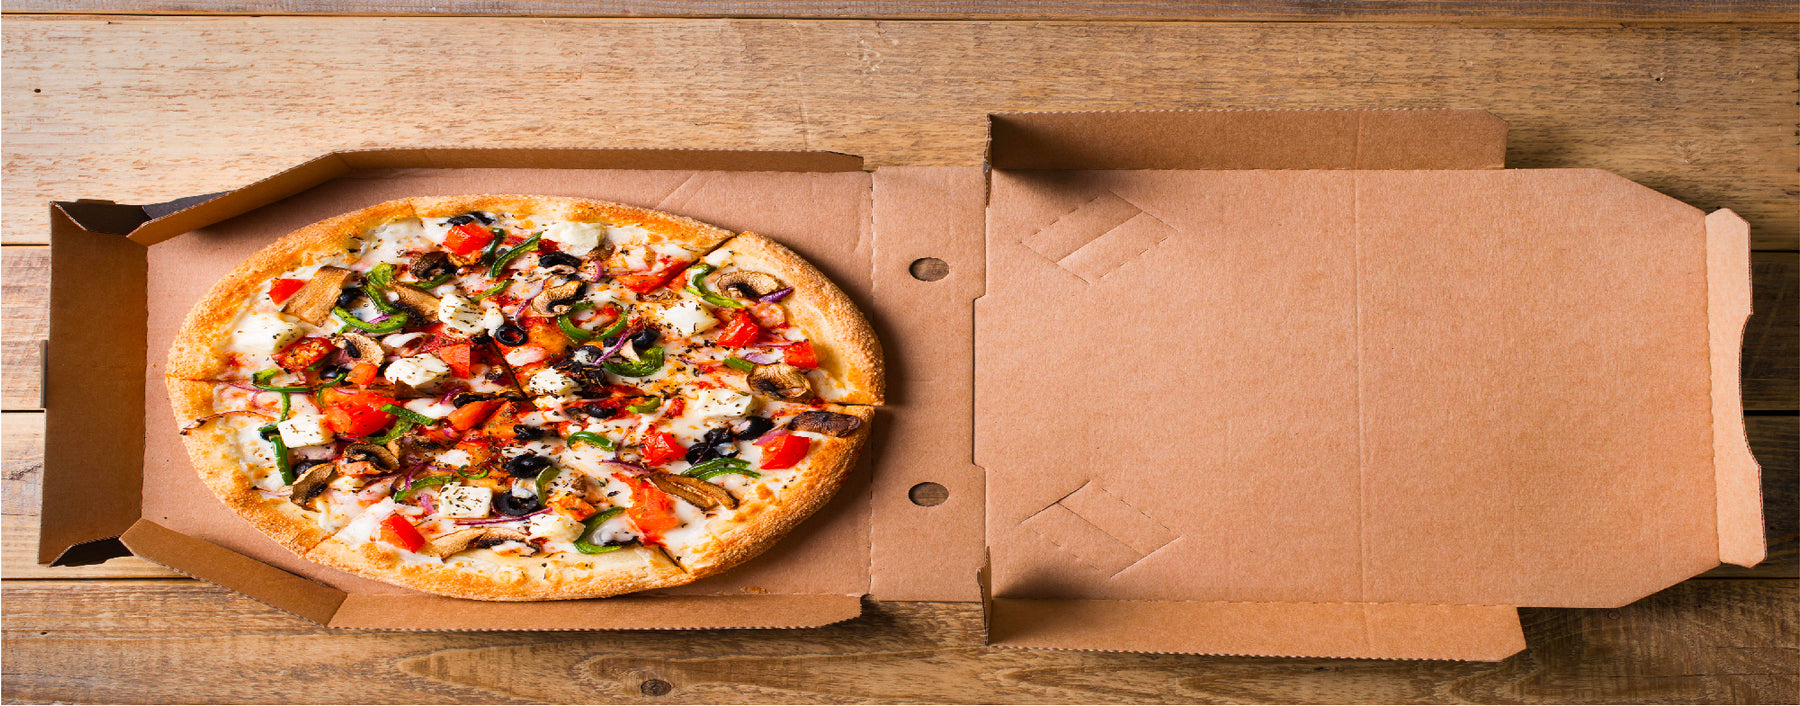 A Perfect Storage For Pizza: Pizza Box